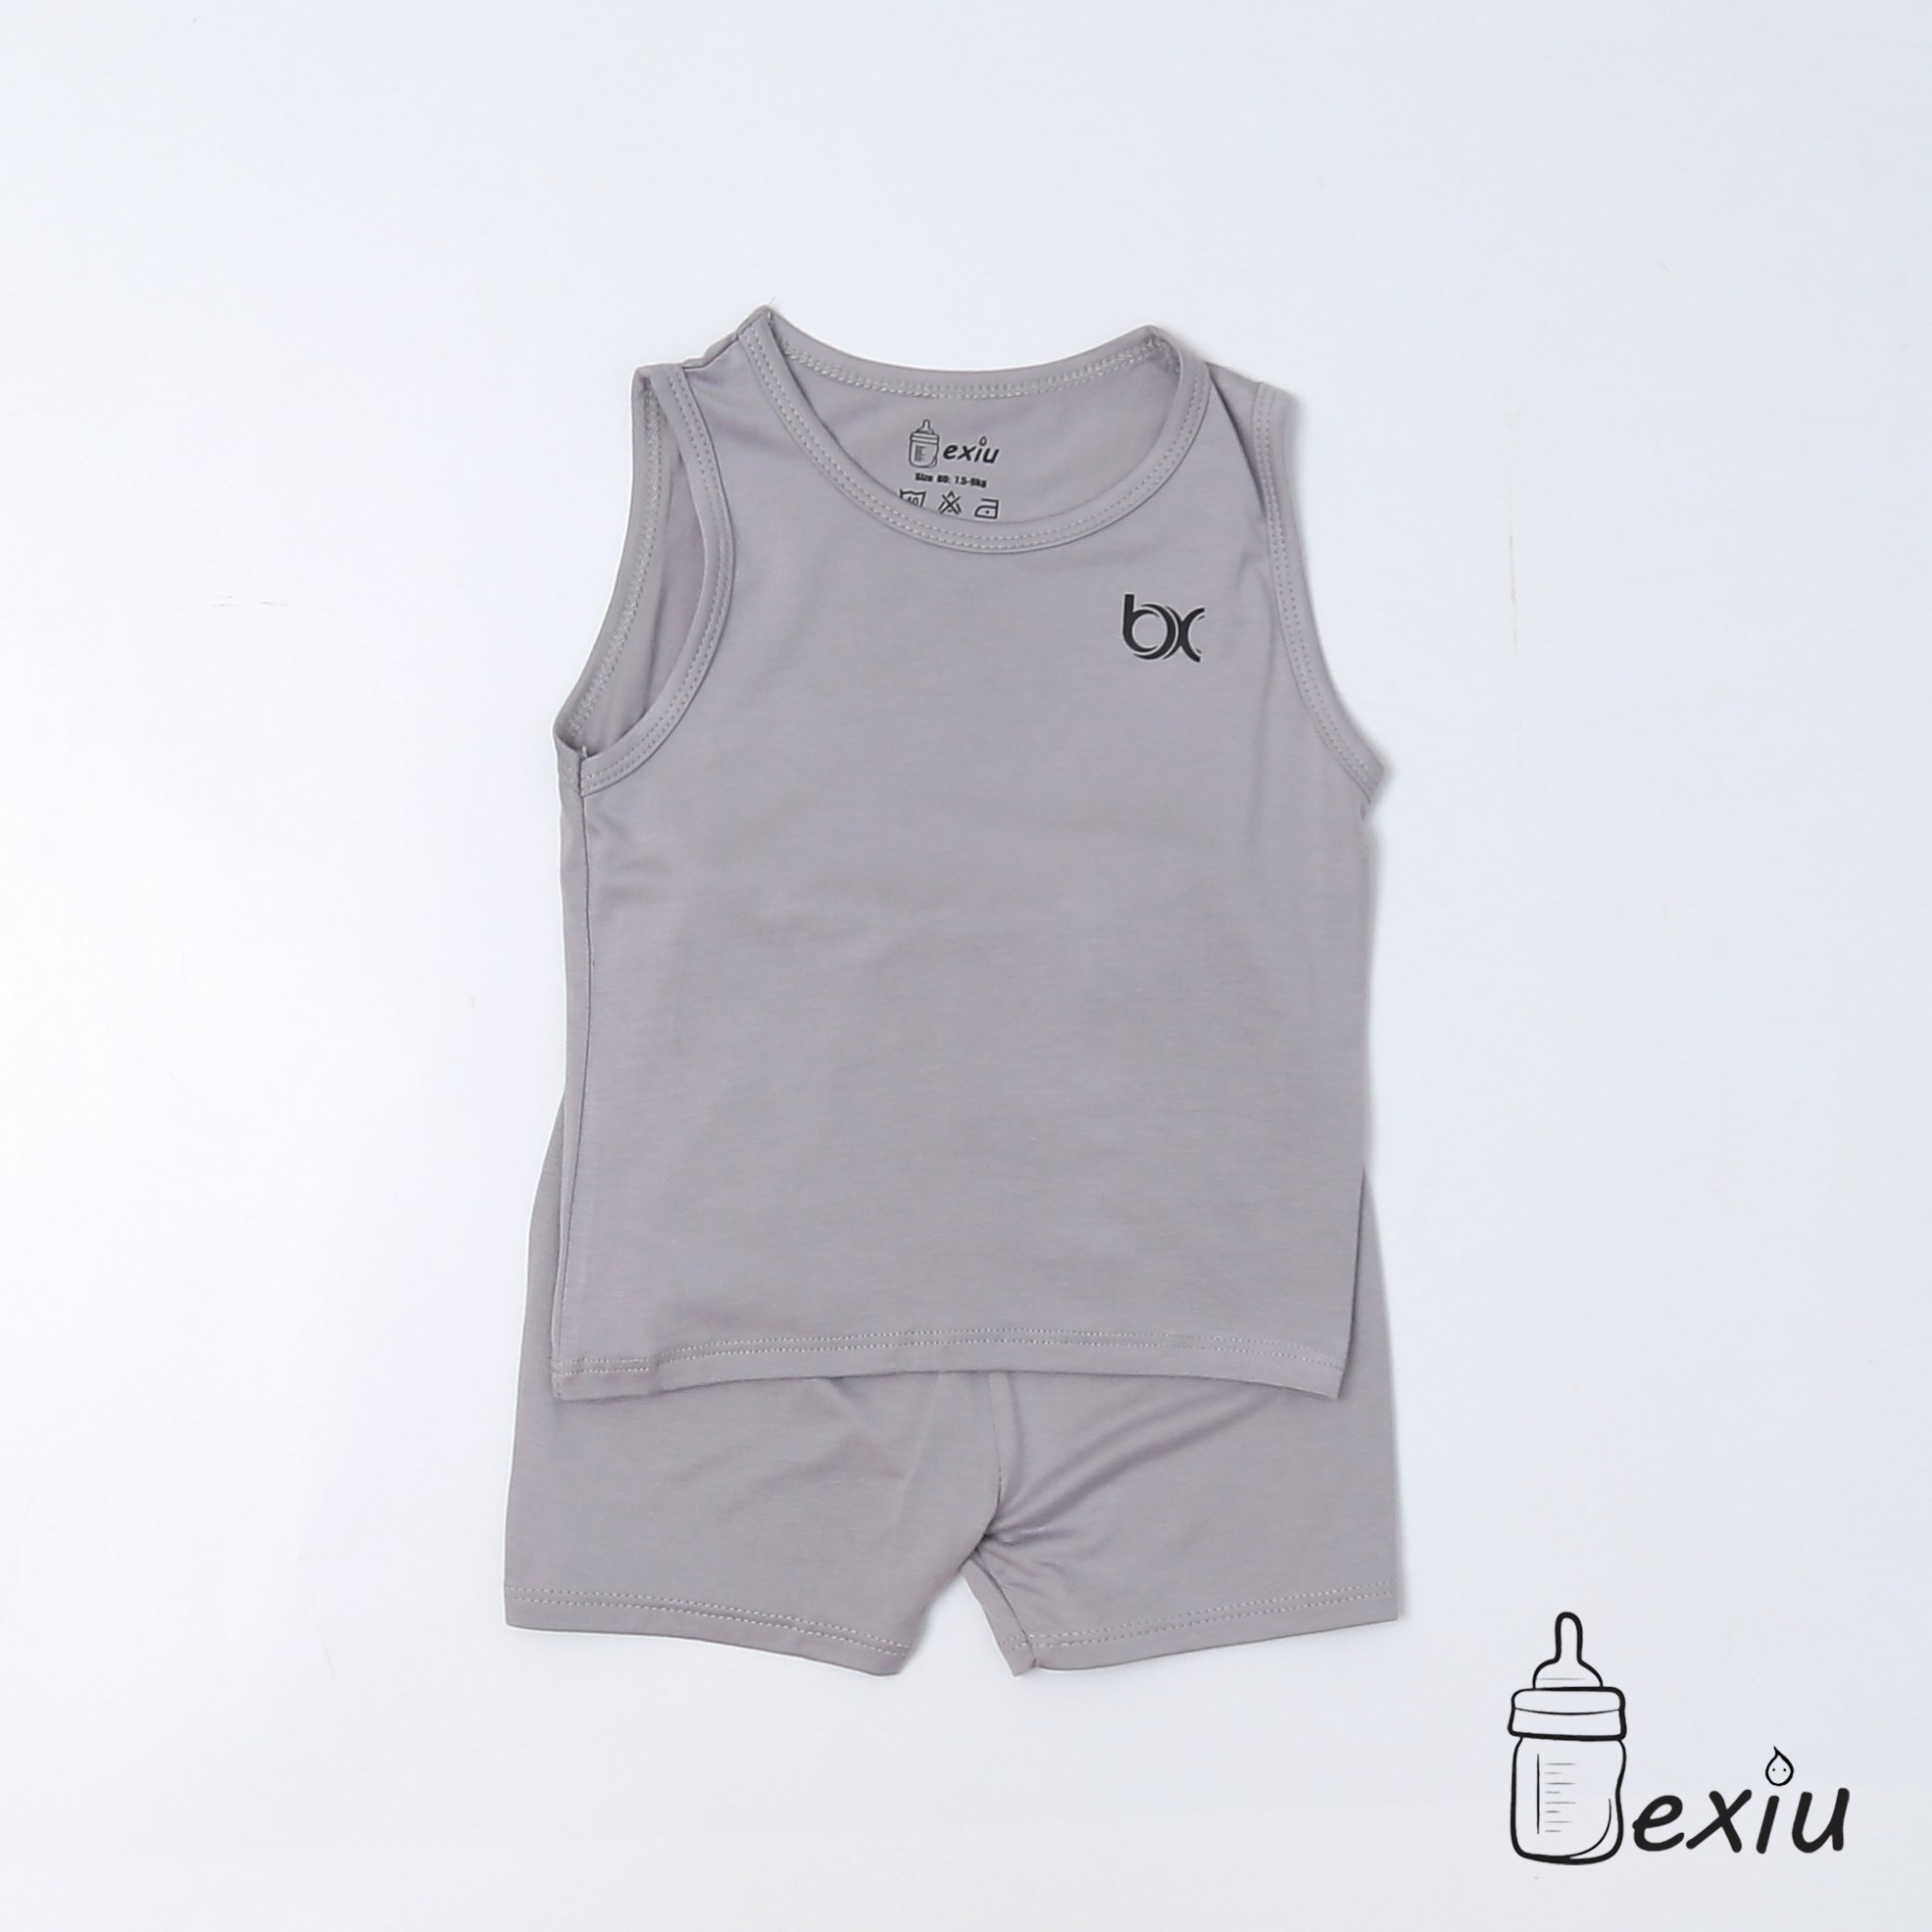 Hcmbộ ba lỗ màu bexiu bx - quần áo trẻ sơ sinh vải cotton lạnh mát mềm - ảnh sản phẩm 5